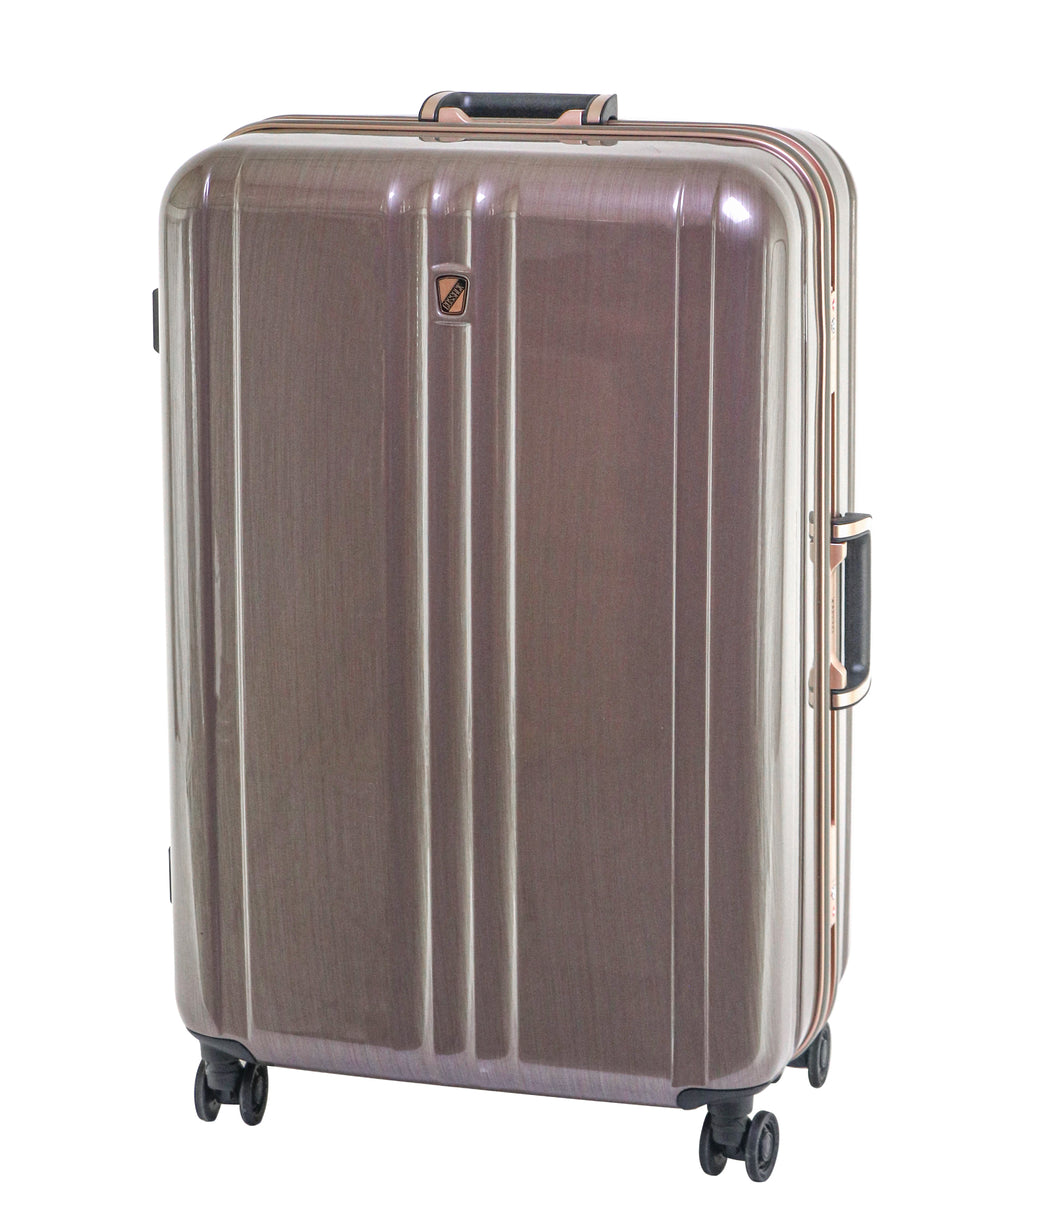 COSSACK-28吋鋁框行李箱(2066經典系列)-髮絲金